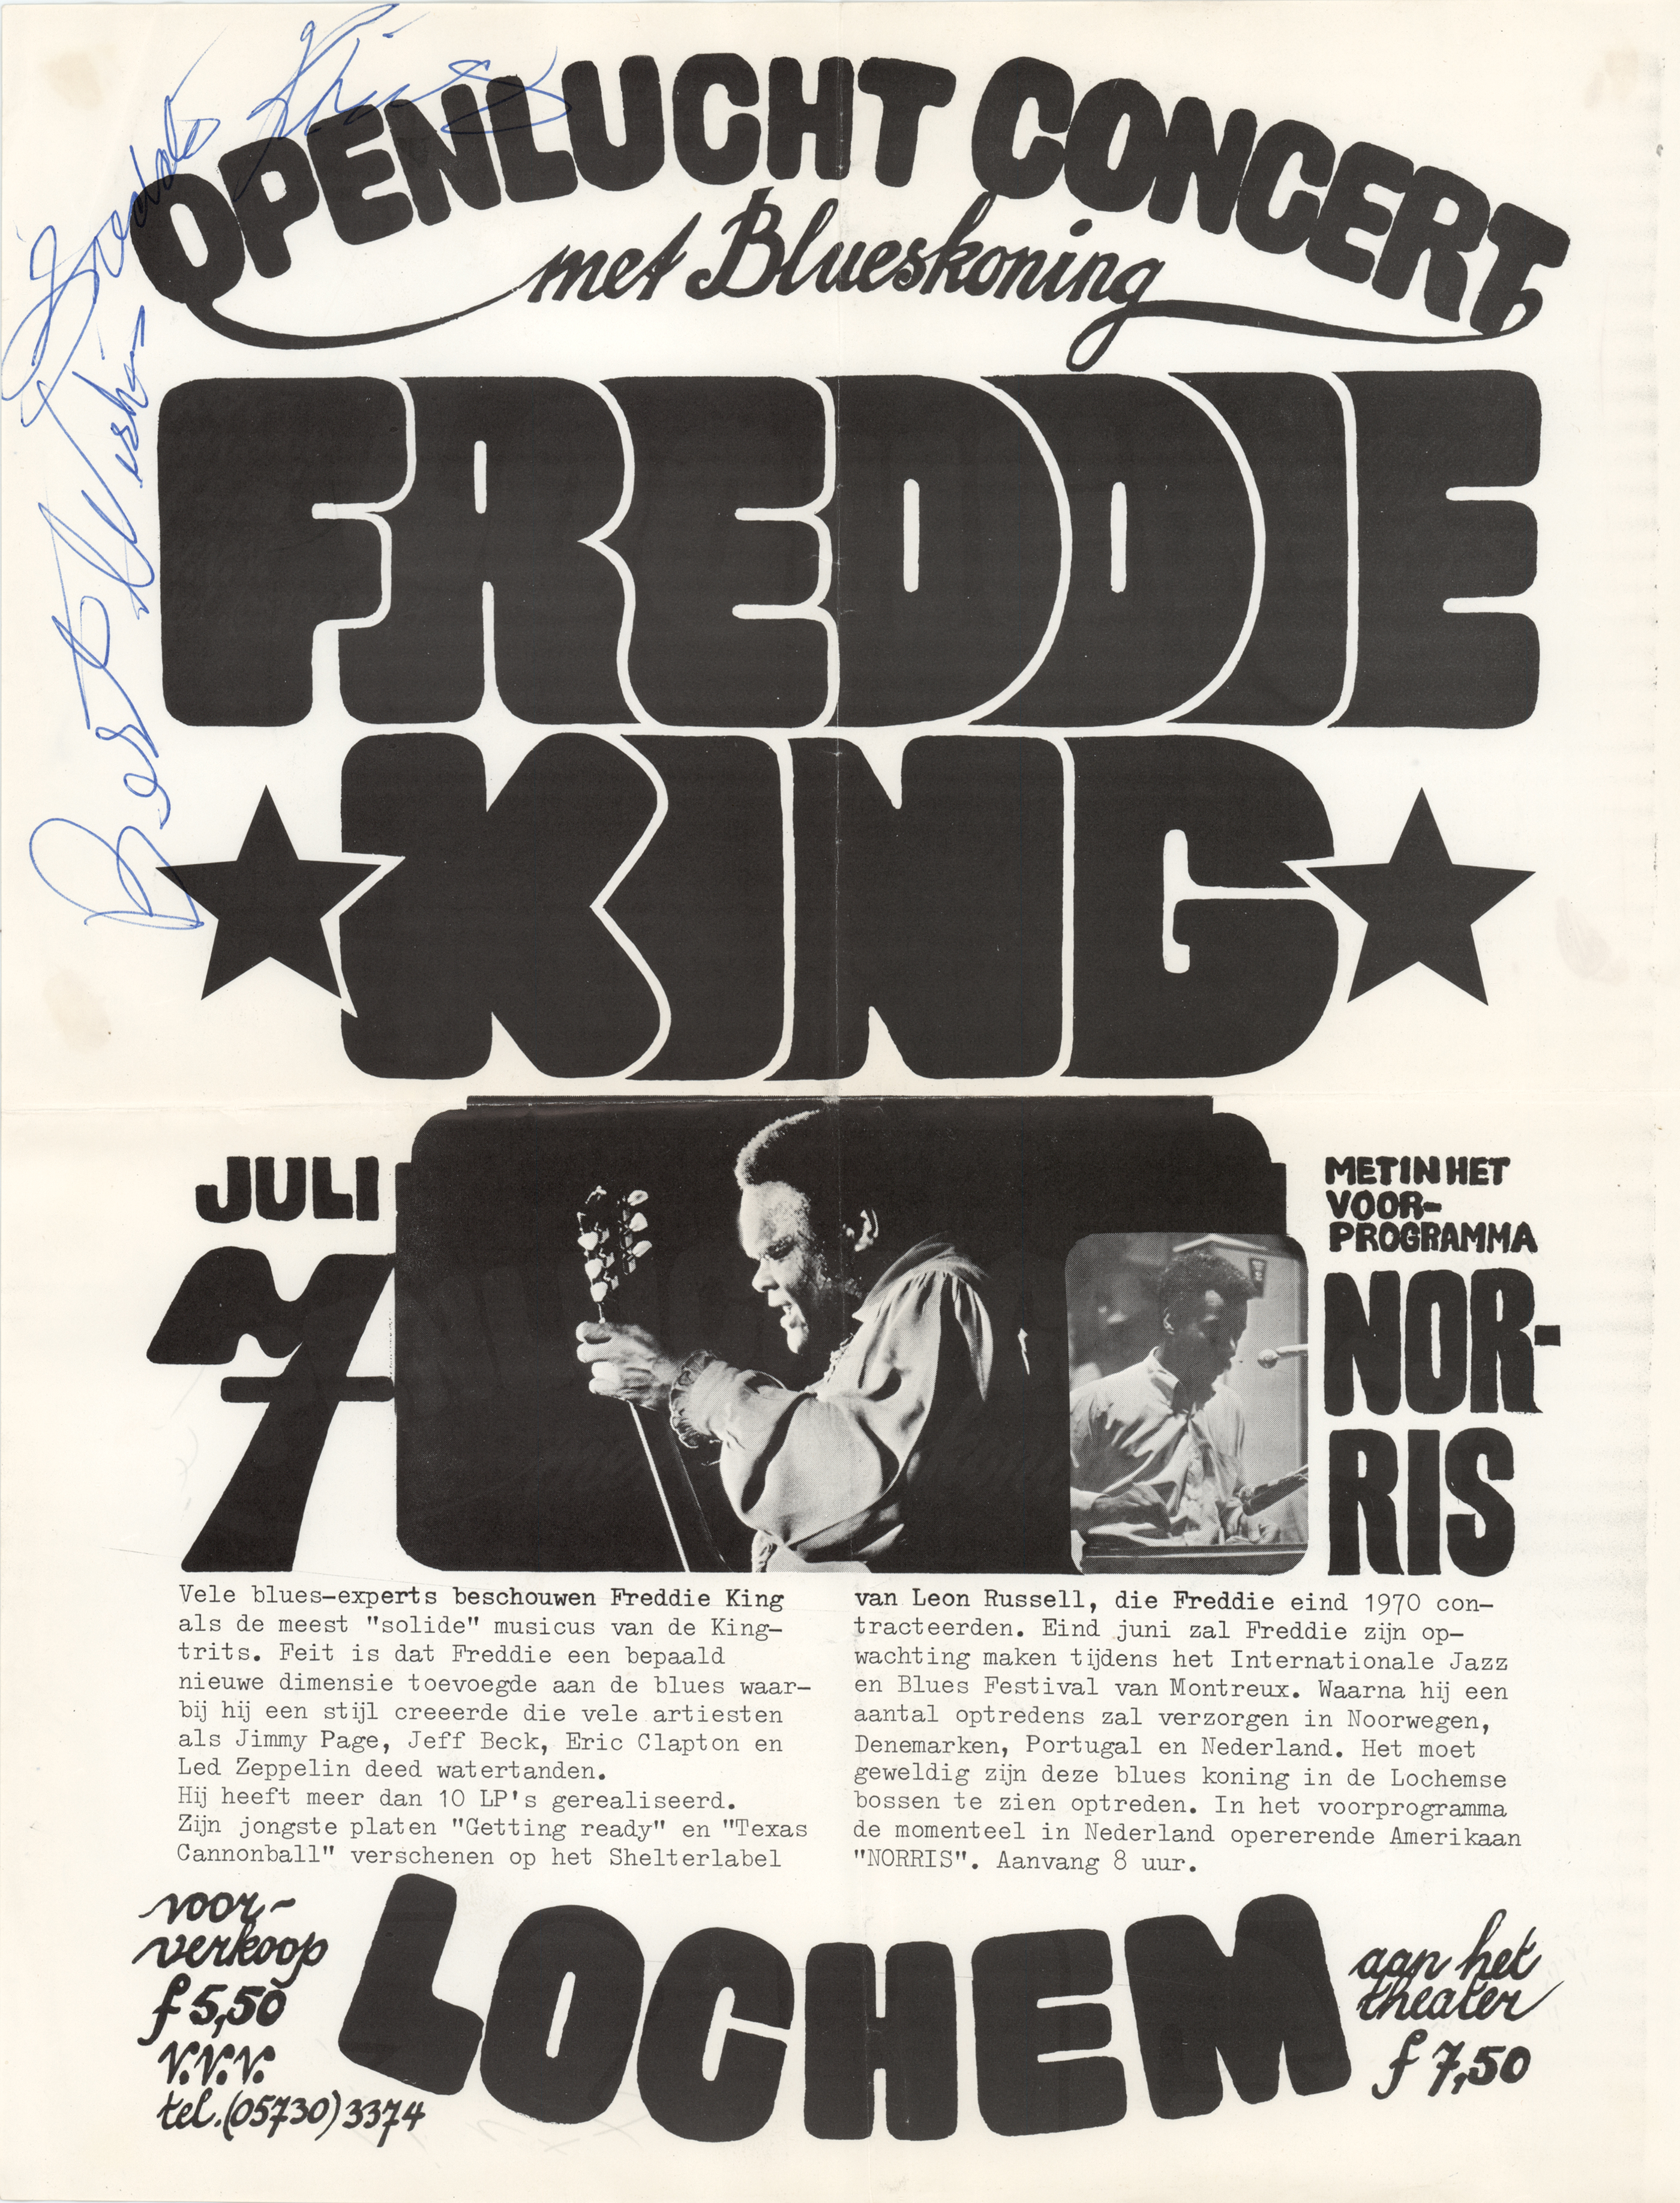 Lot #349 Freddie King Signed 1973 Concert Poster - Image 1